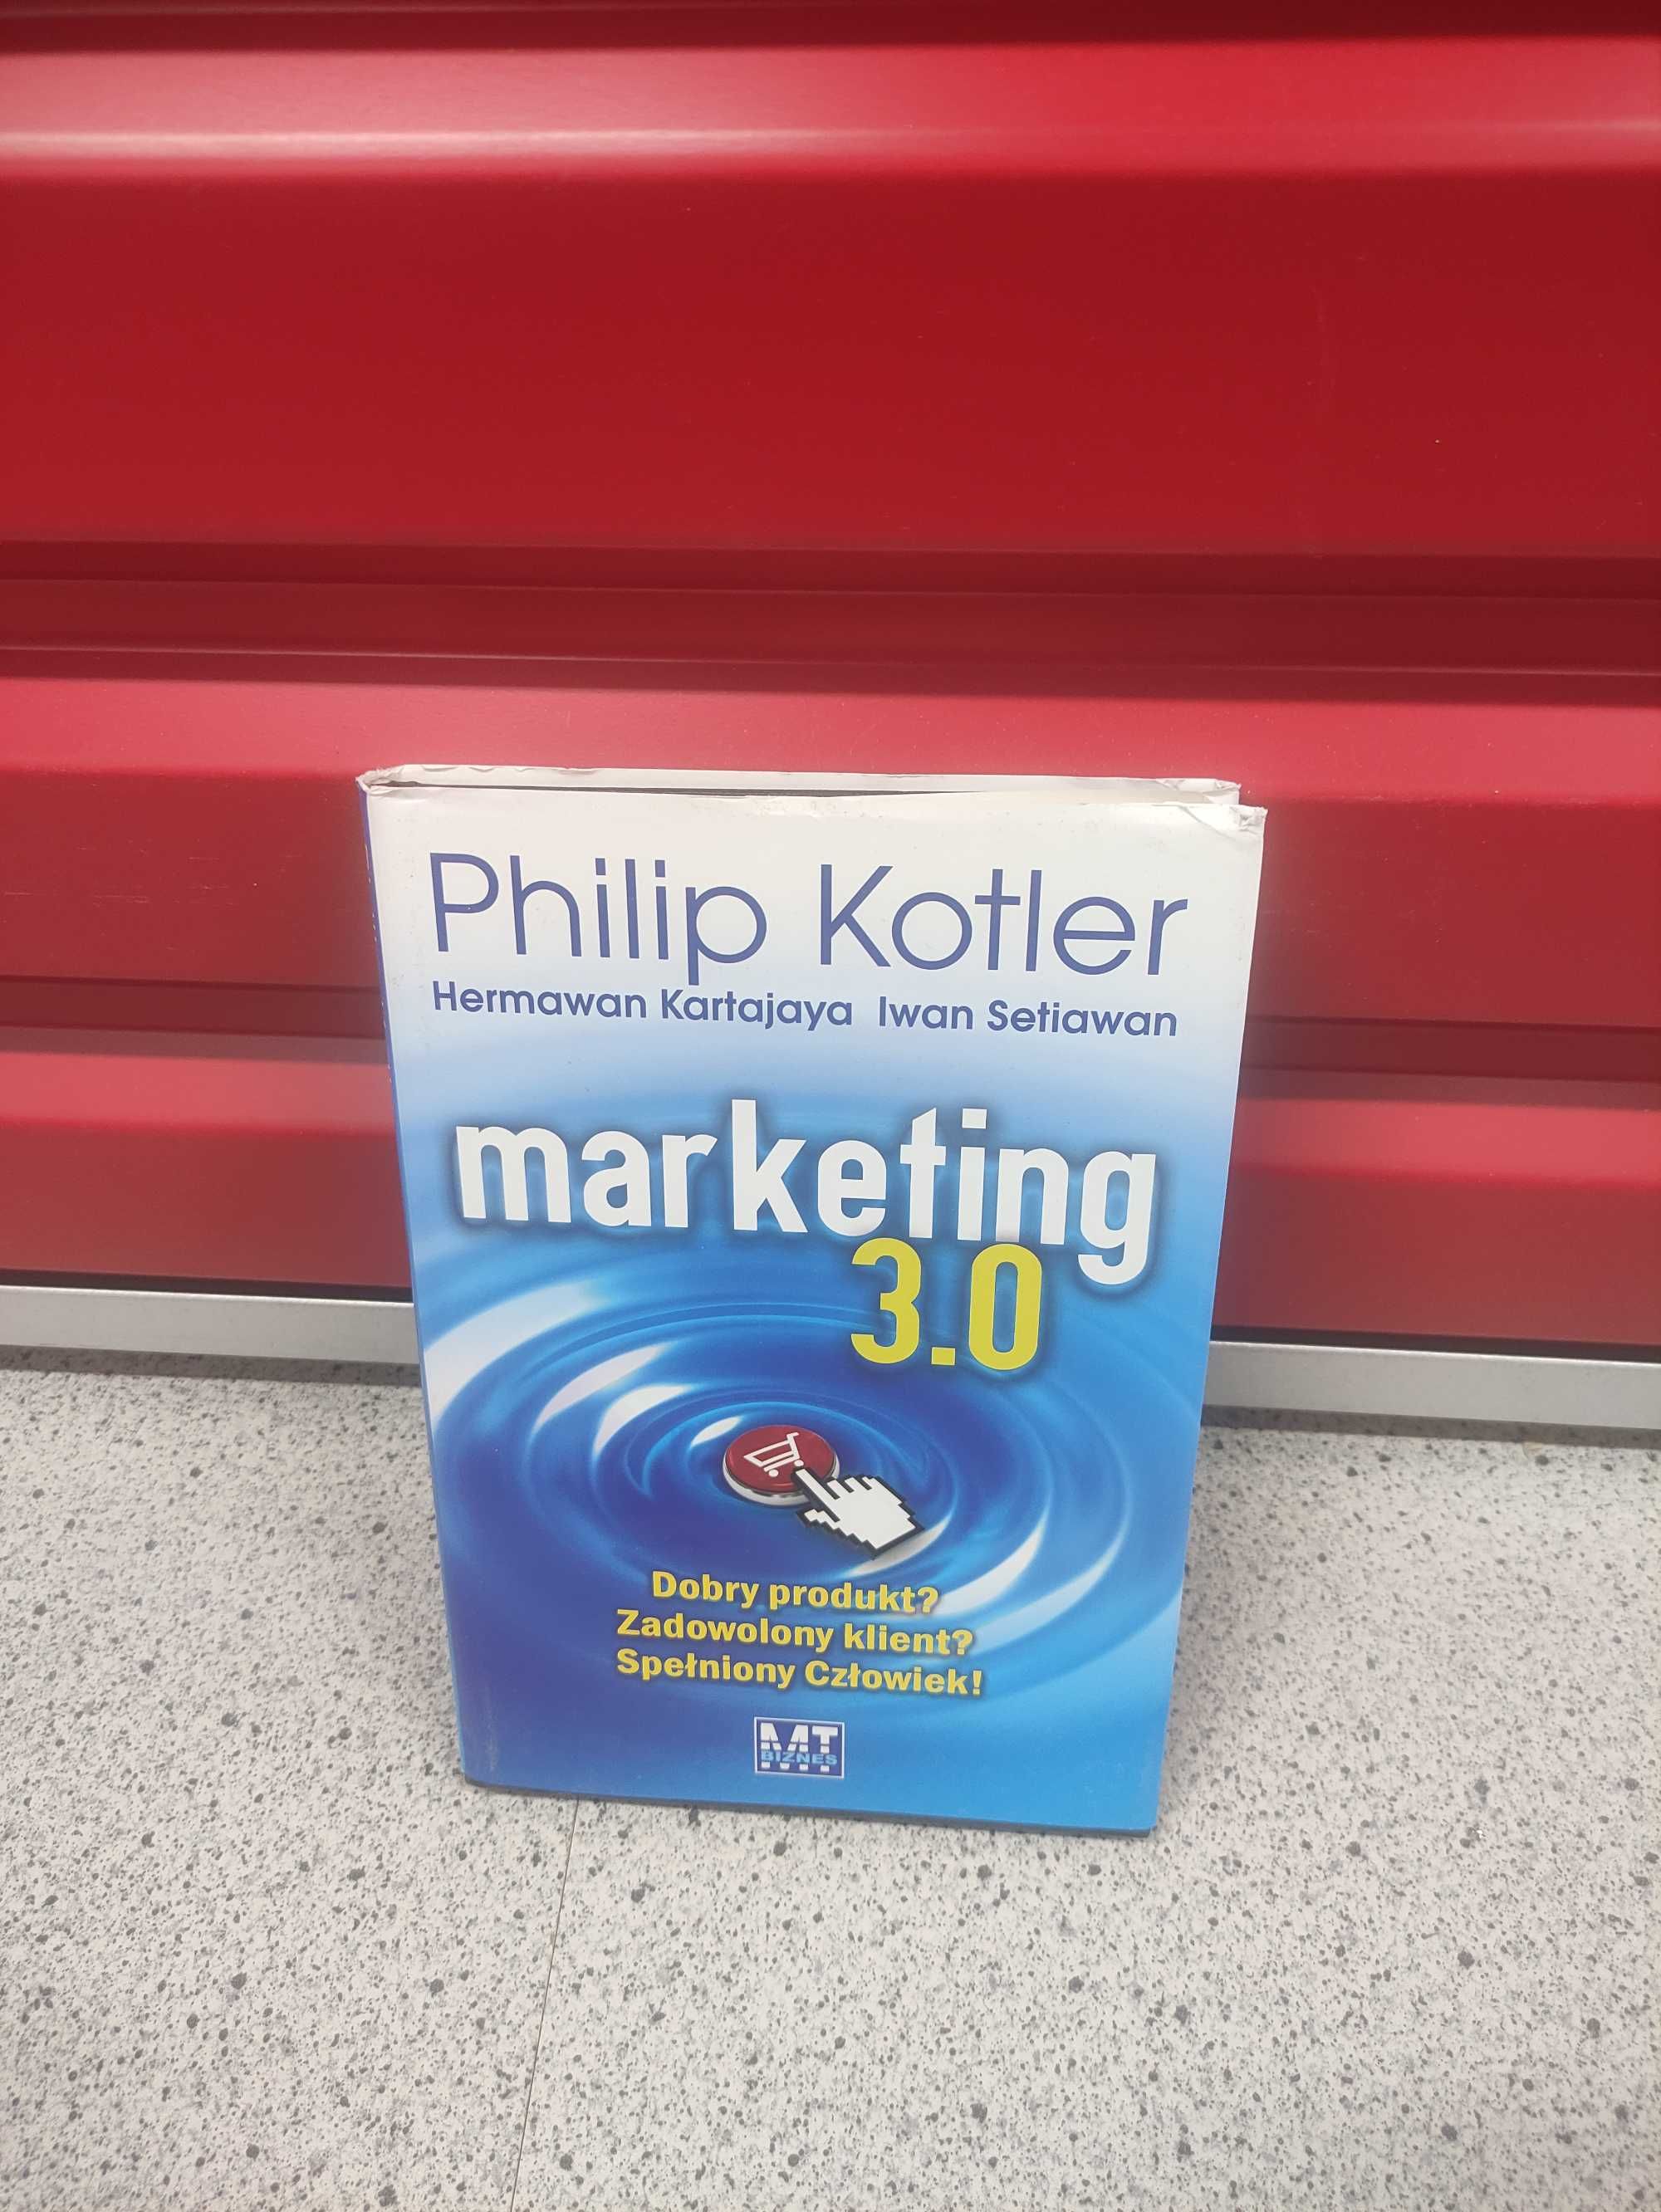 Marketing 3.0 Filip Kotler